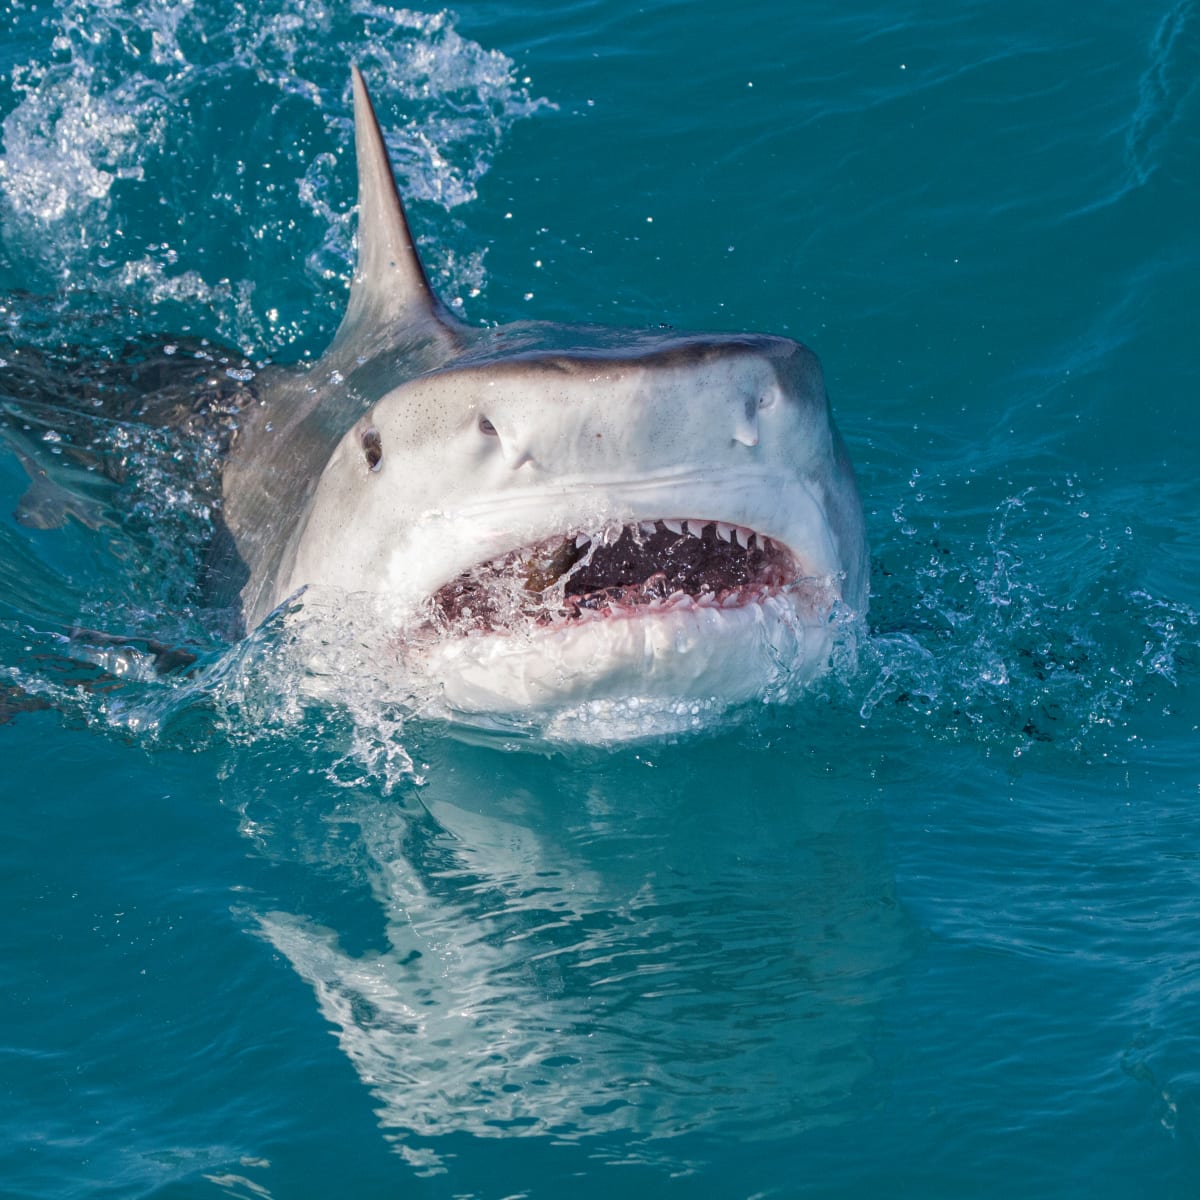 Maryland boy, 10, attacked by shark at Bahamas resort